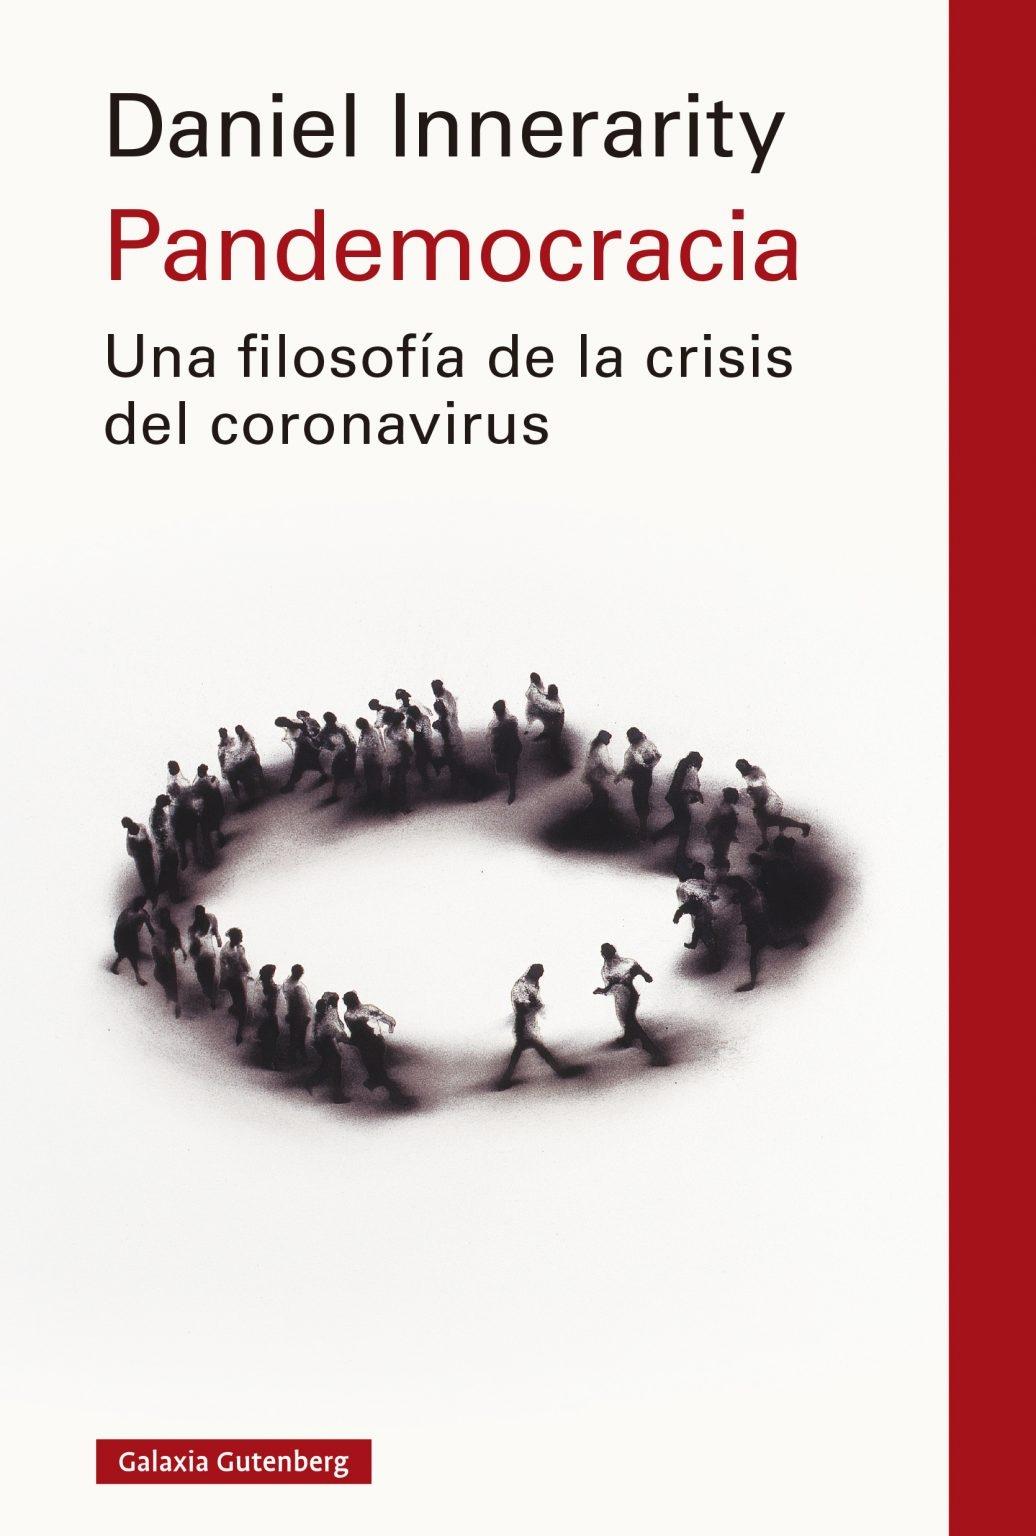 Pandemocracia "Una filosofía de la crisis del coronavirus". 